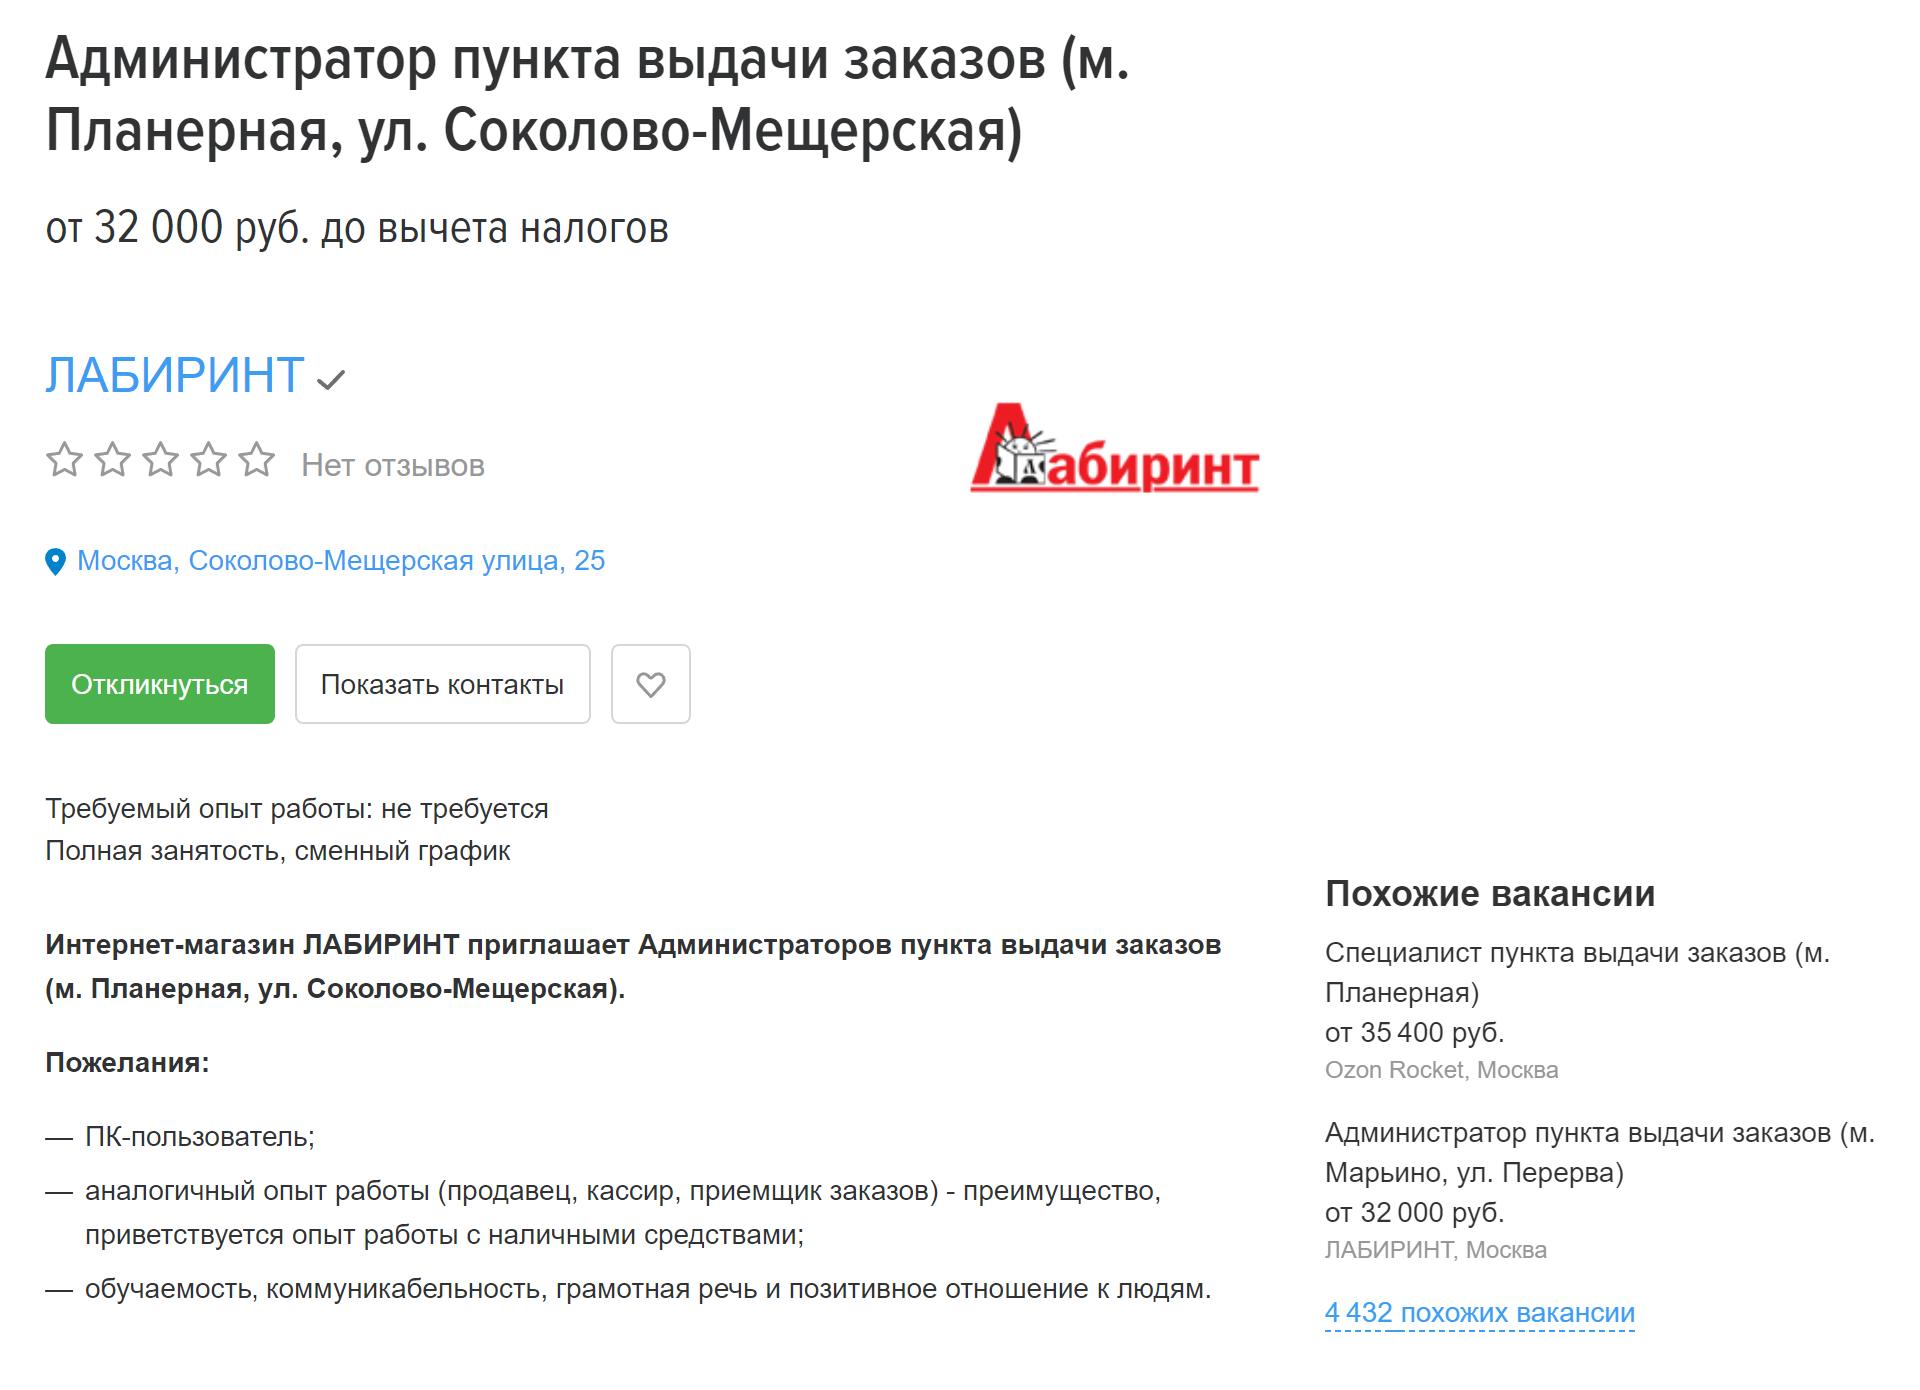 Администратору пункта выдачи заказов предлагают от 32 000 ₽ «грязными». Источник: hh.ru